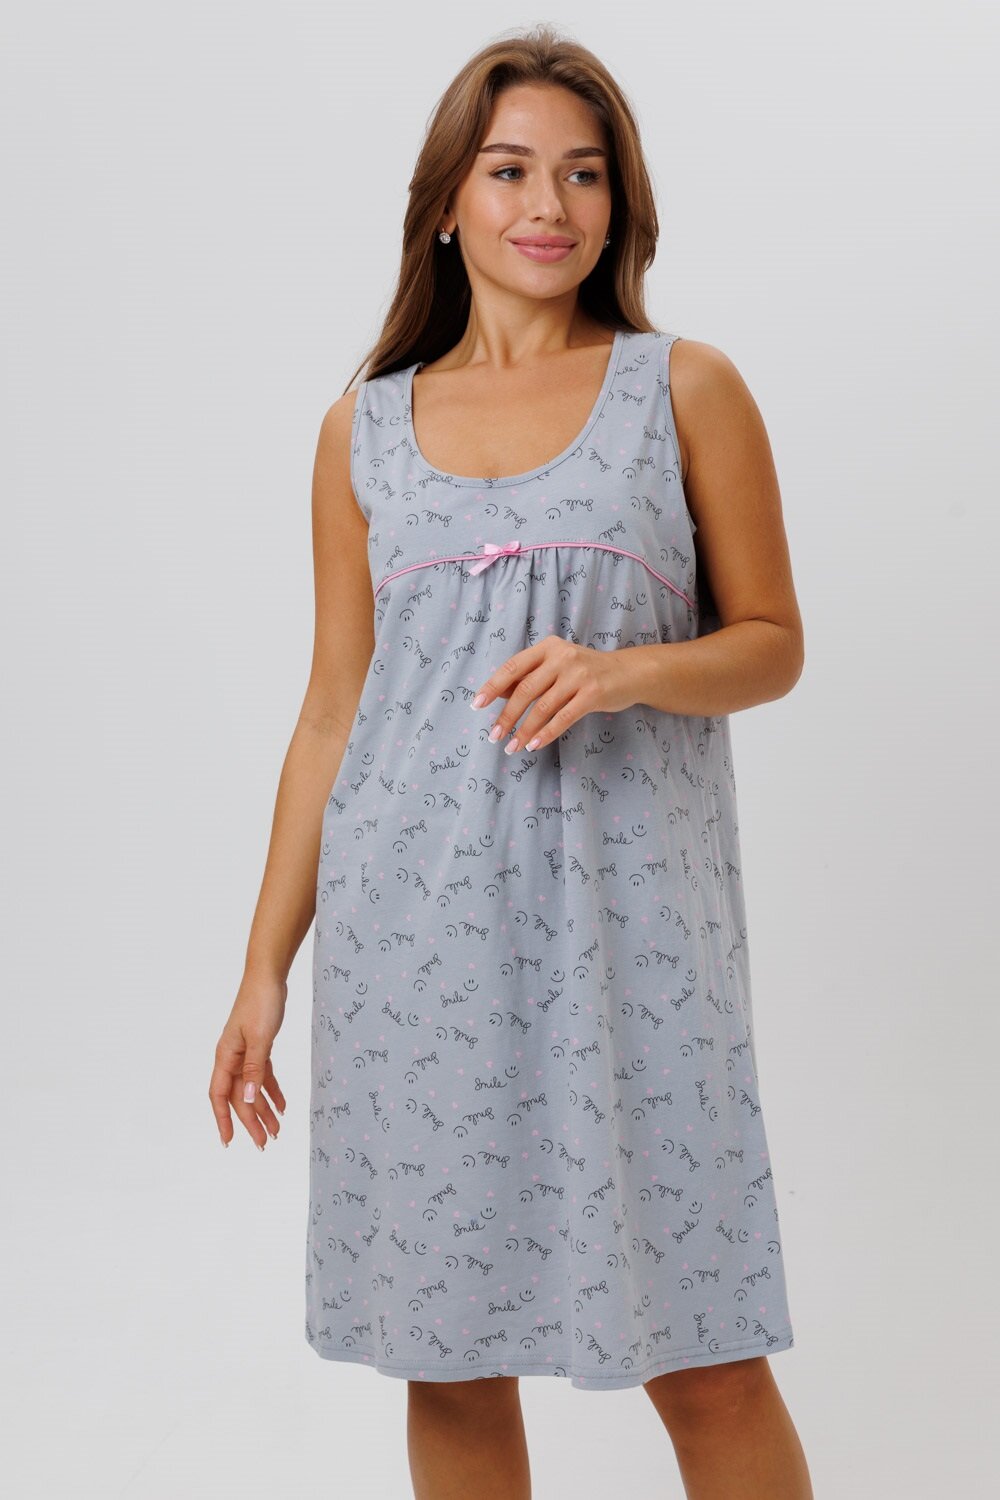 Сорочка женская ночная Modellini 1629/2 цвет серый, размер 54 - фотография № 8